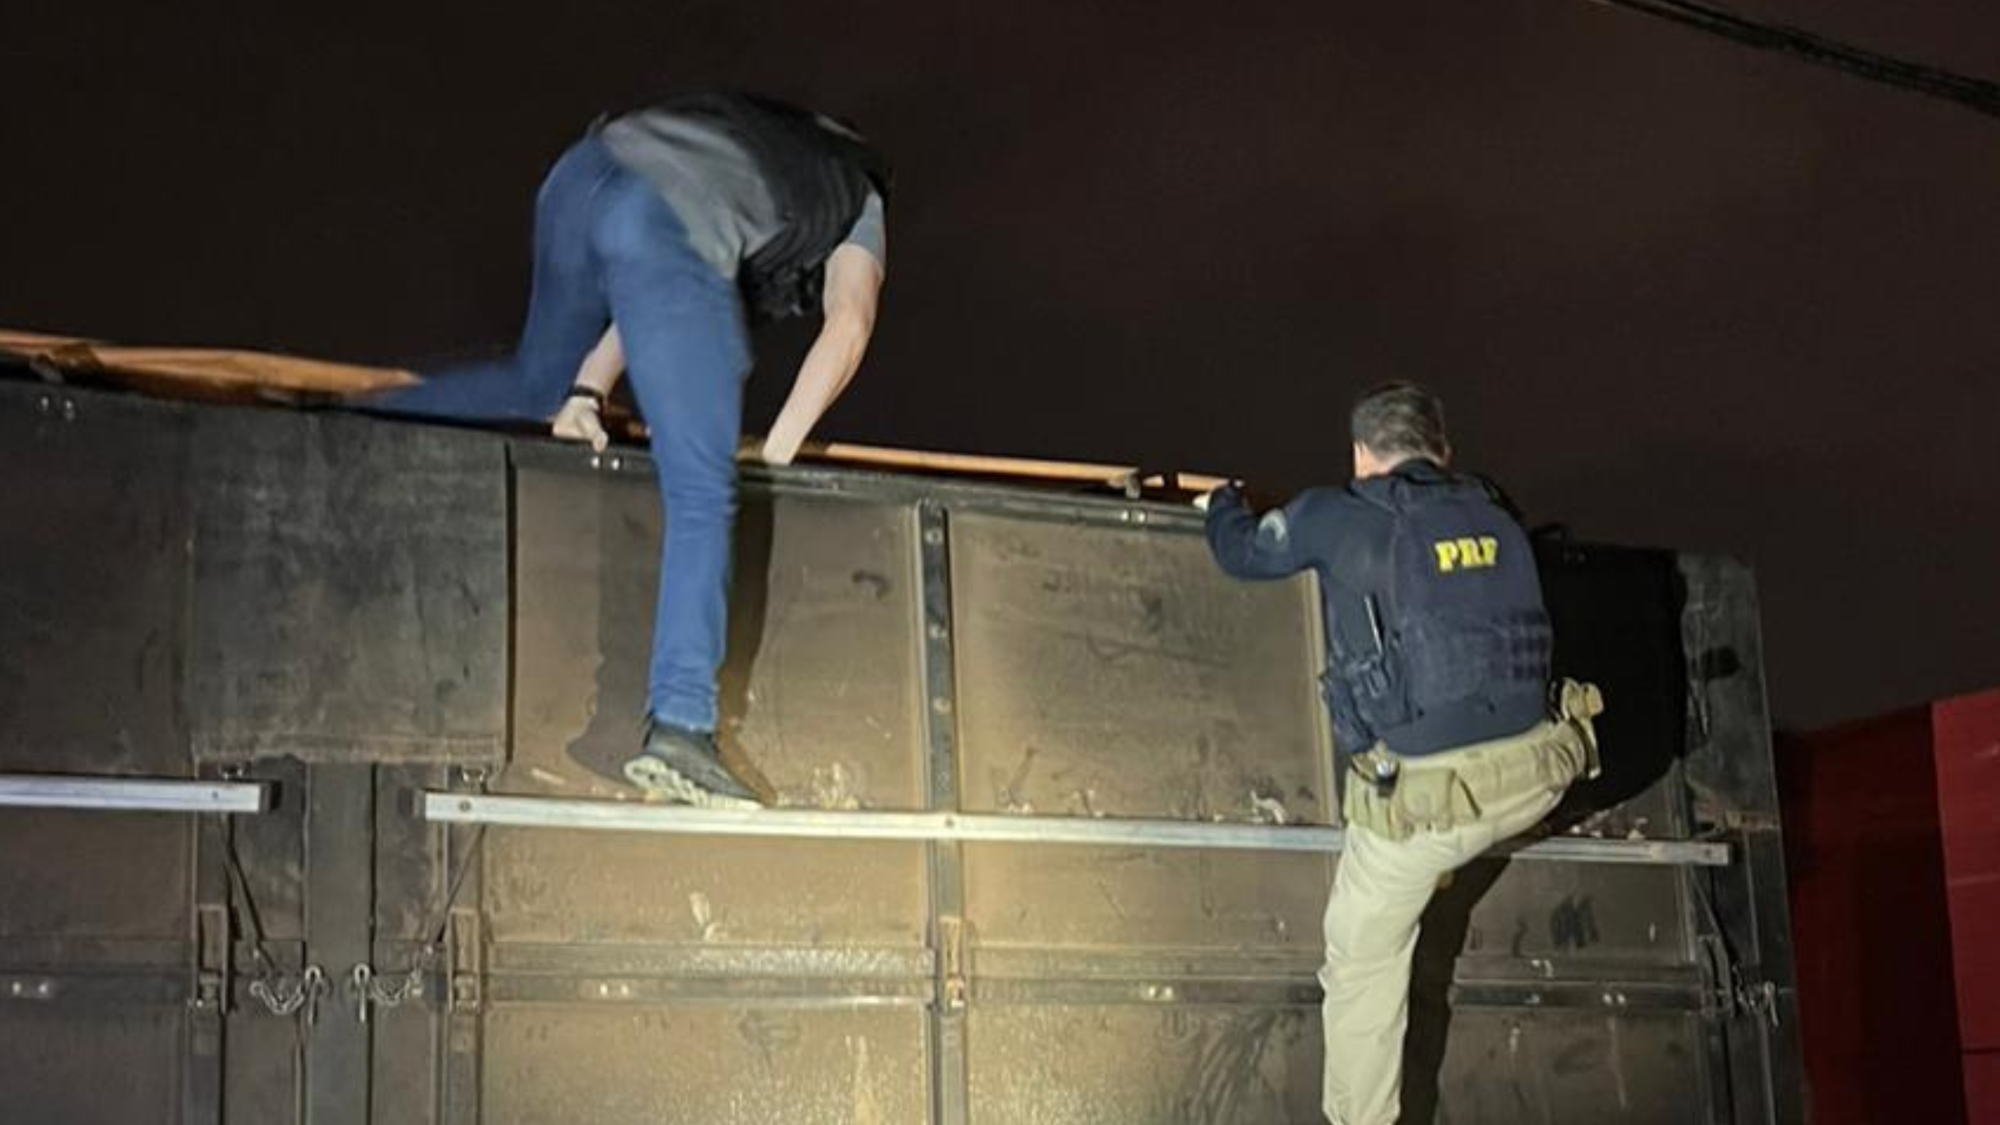 Polícia apreende meia tonelada de cocaína escondida em carga de milho em Goiânia